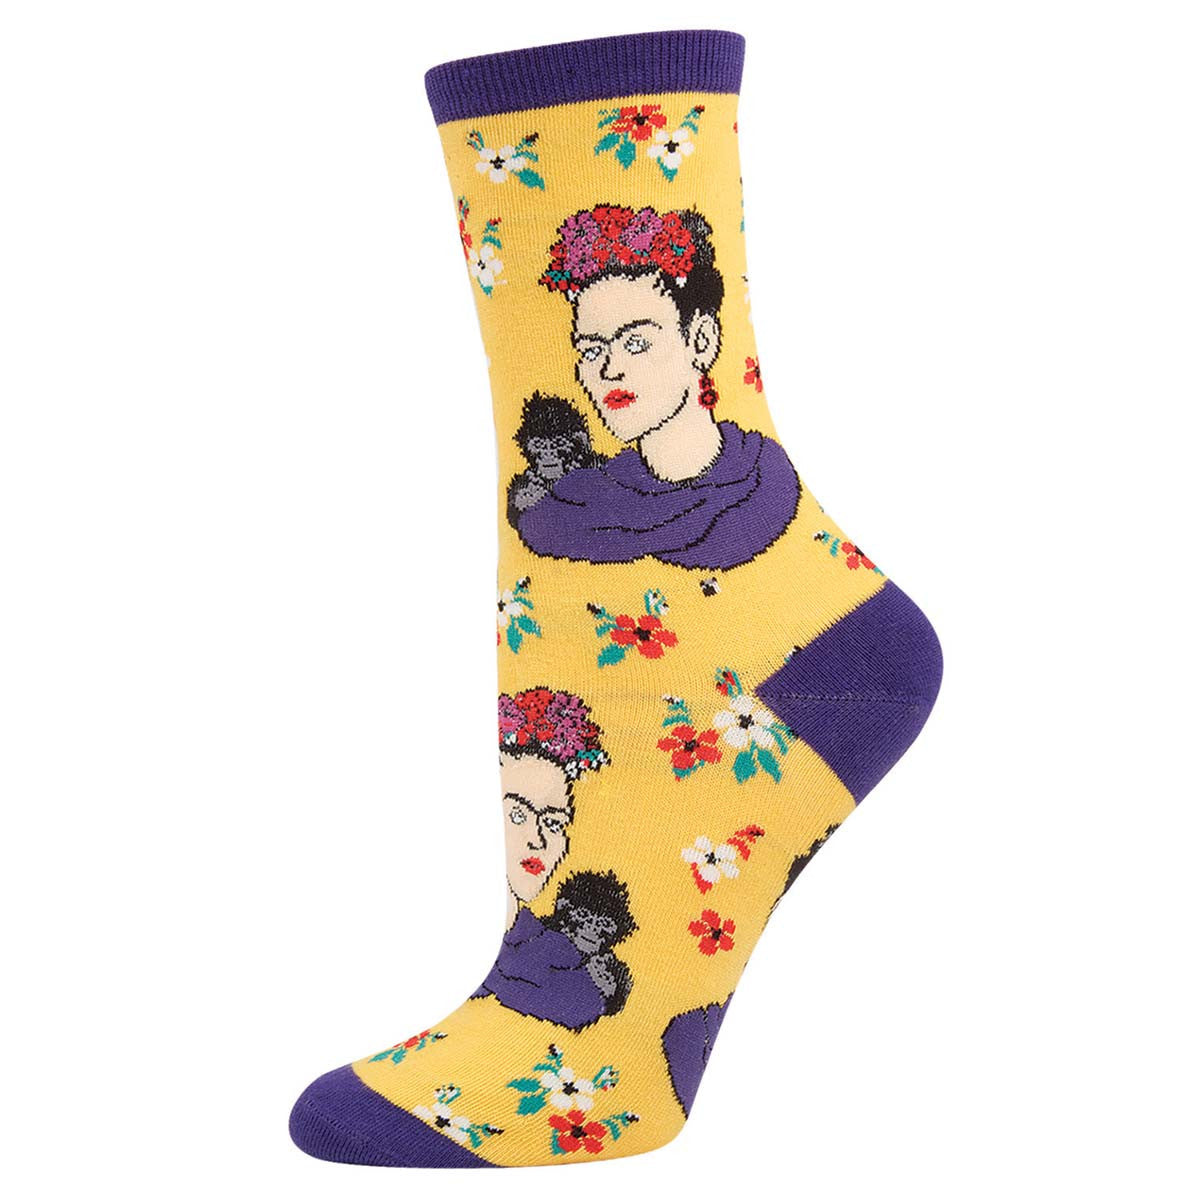 Frida Kahlo Portrait Socks (Adult Medium)